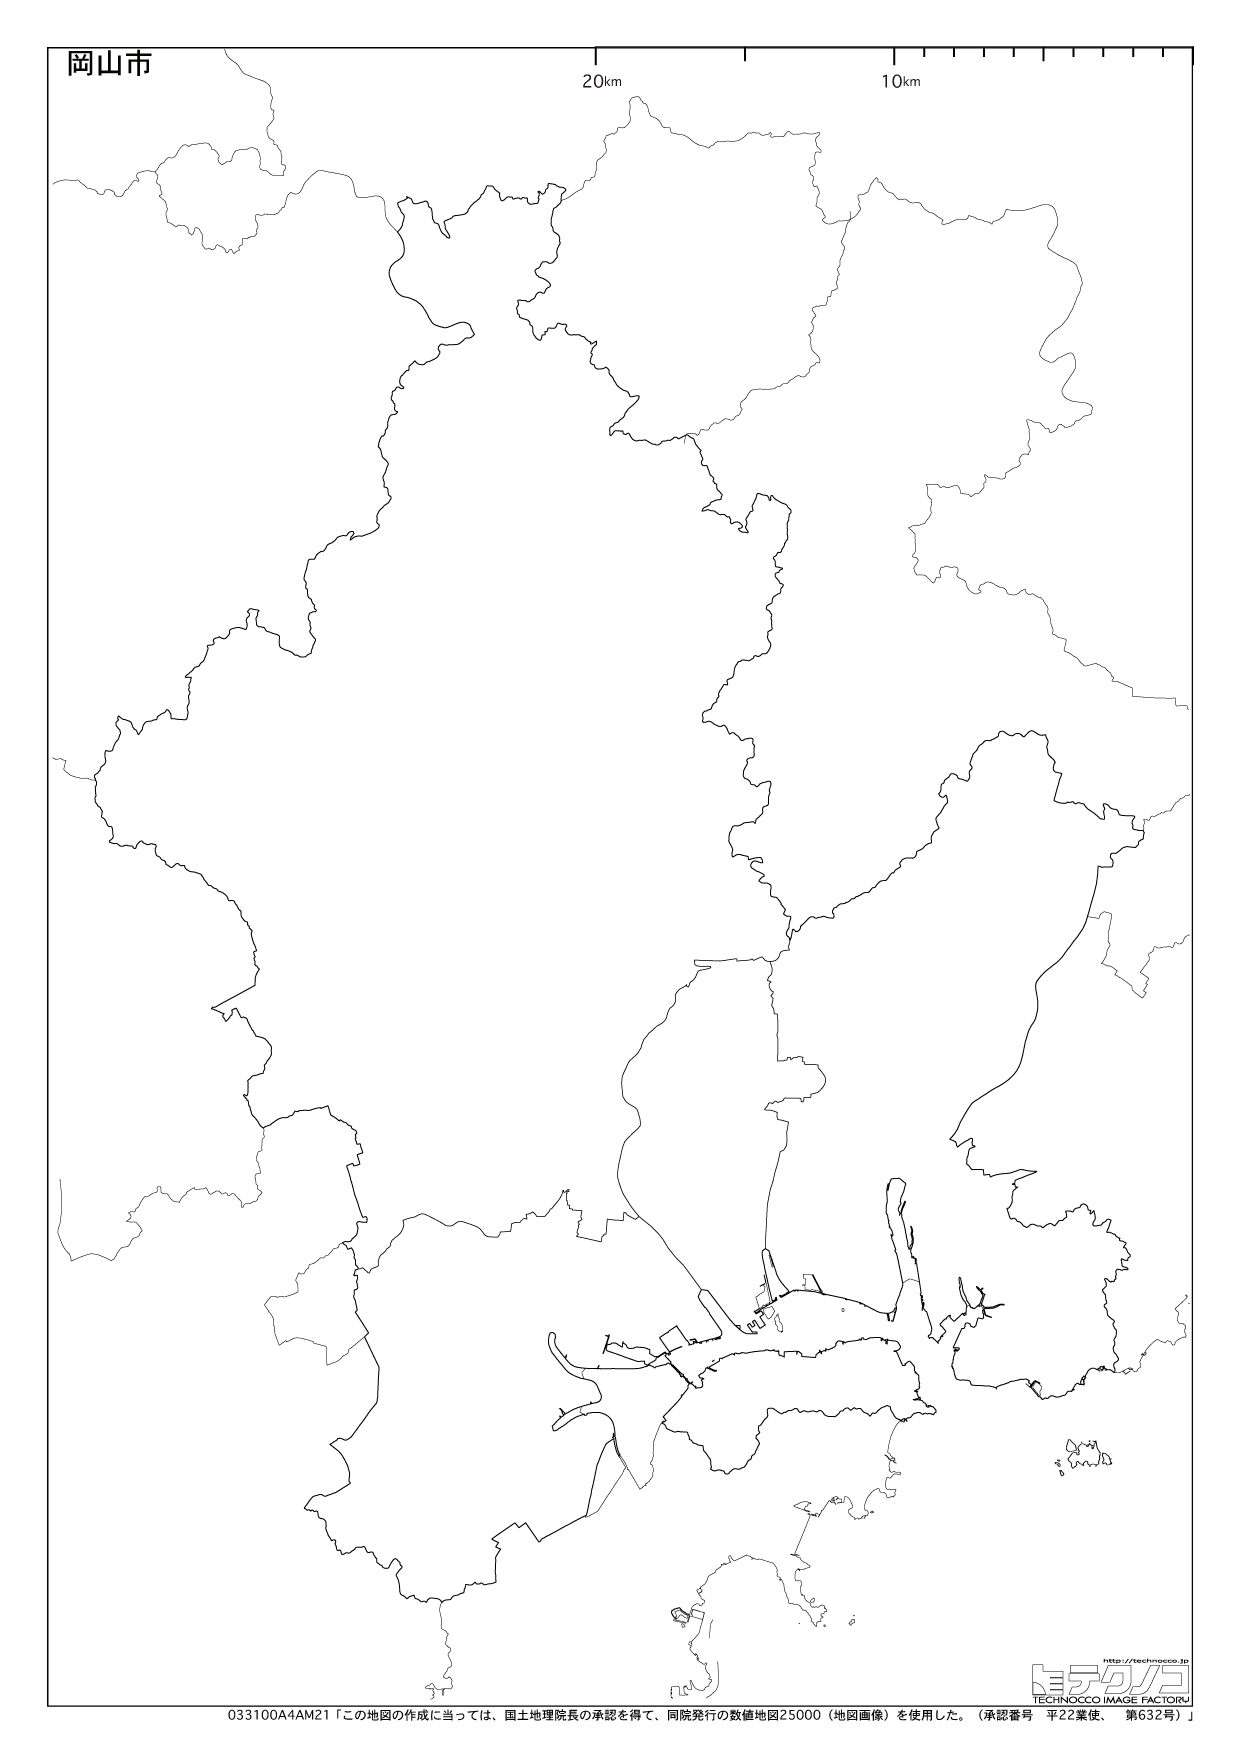 岡山県の白地図と市町村の合併情報